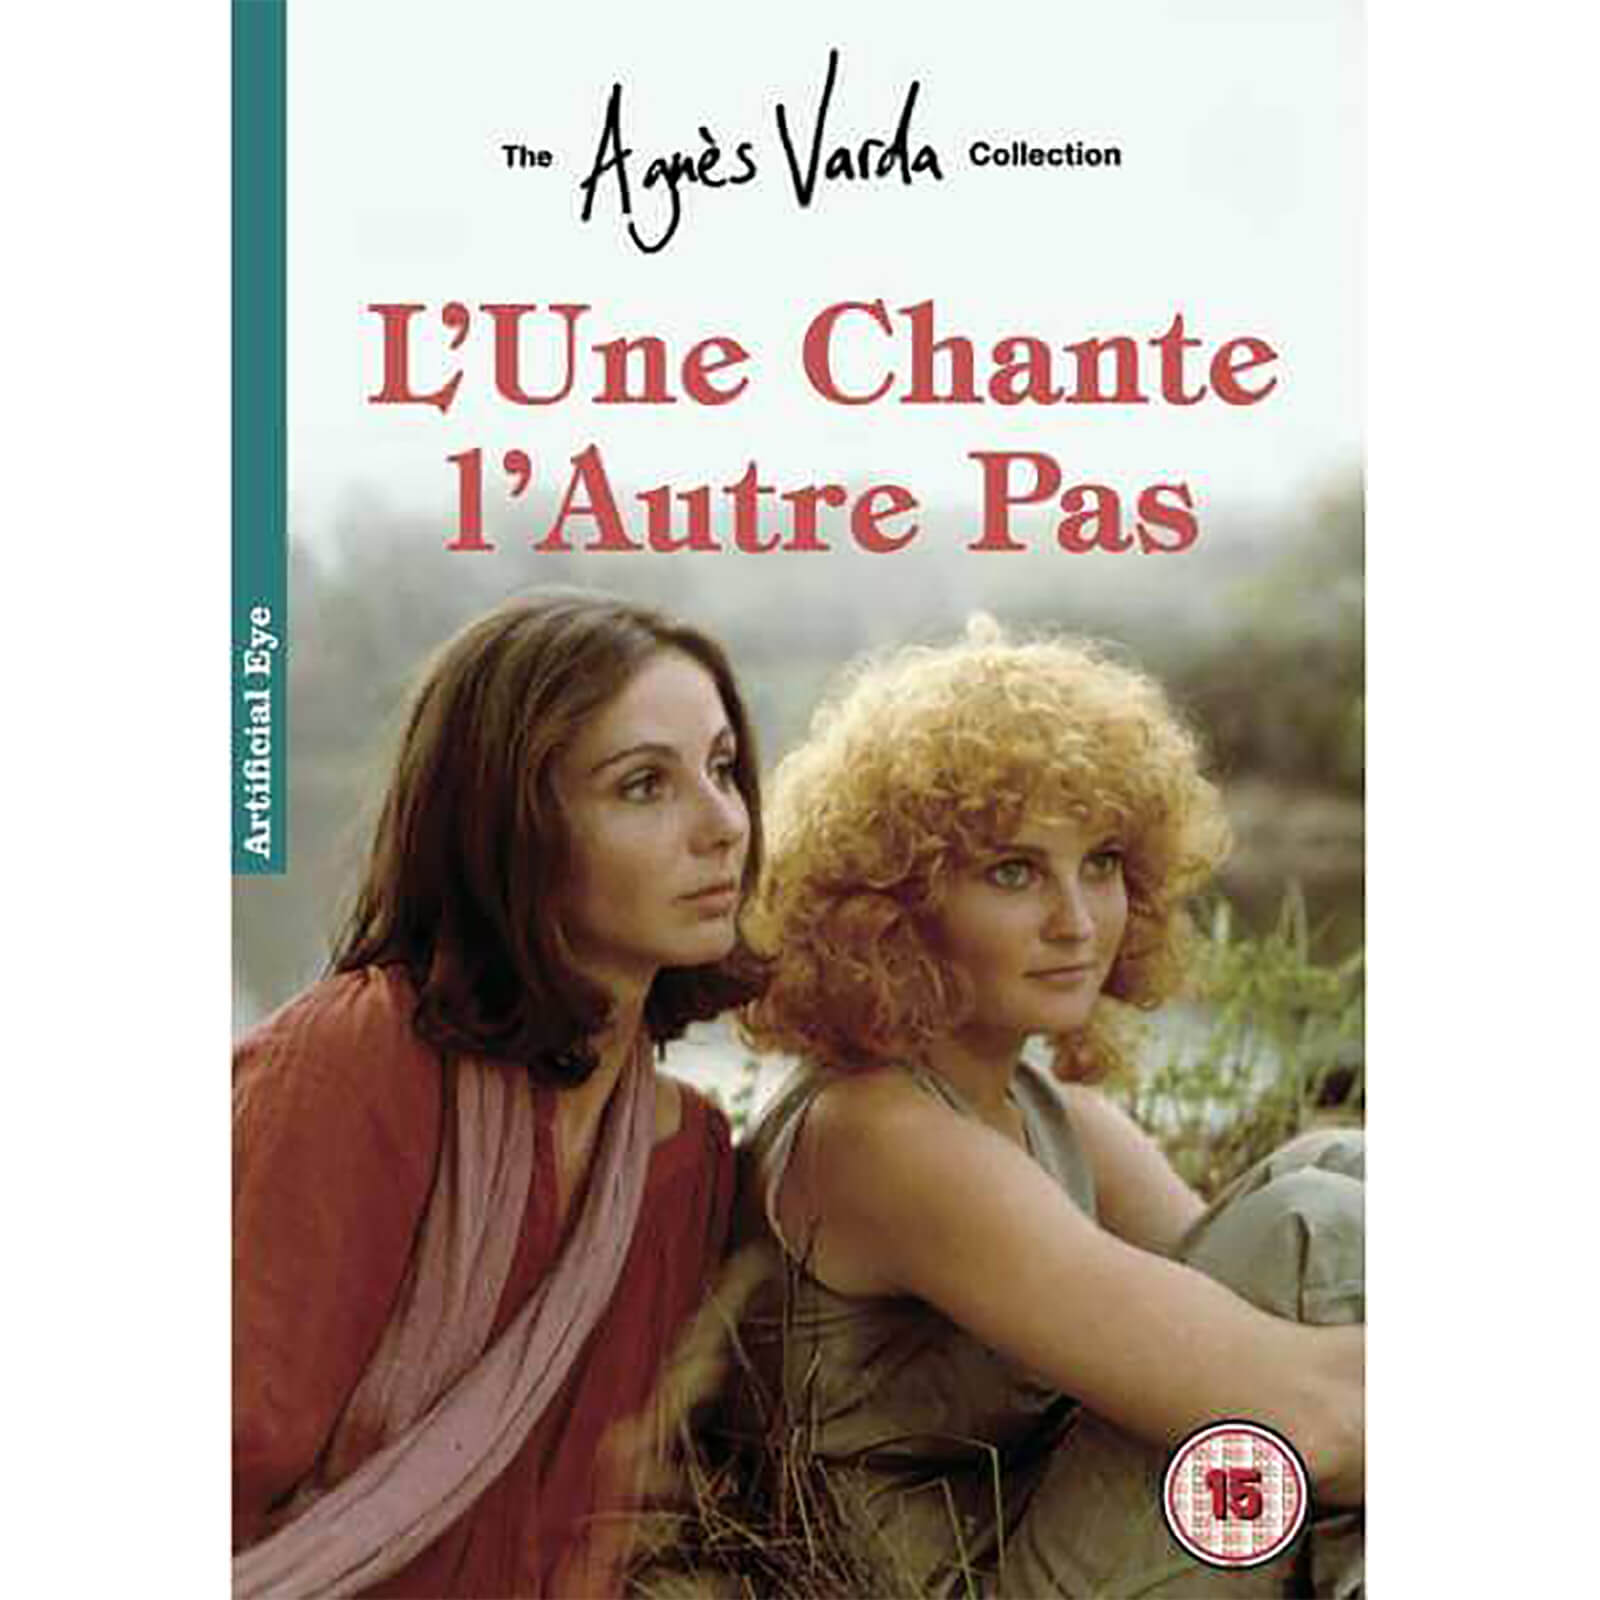 LUne Chante, LAutre Pas von Curzon Films